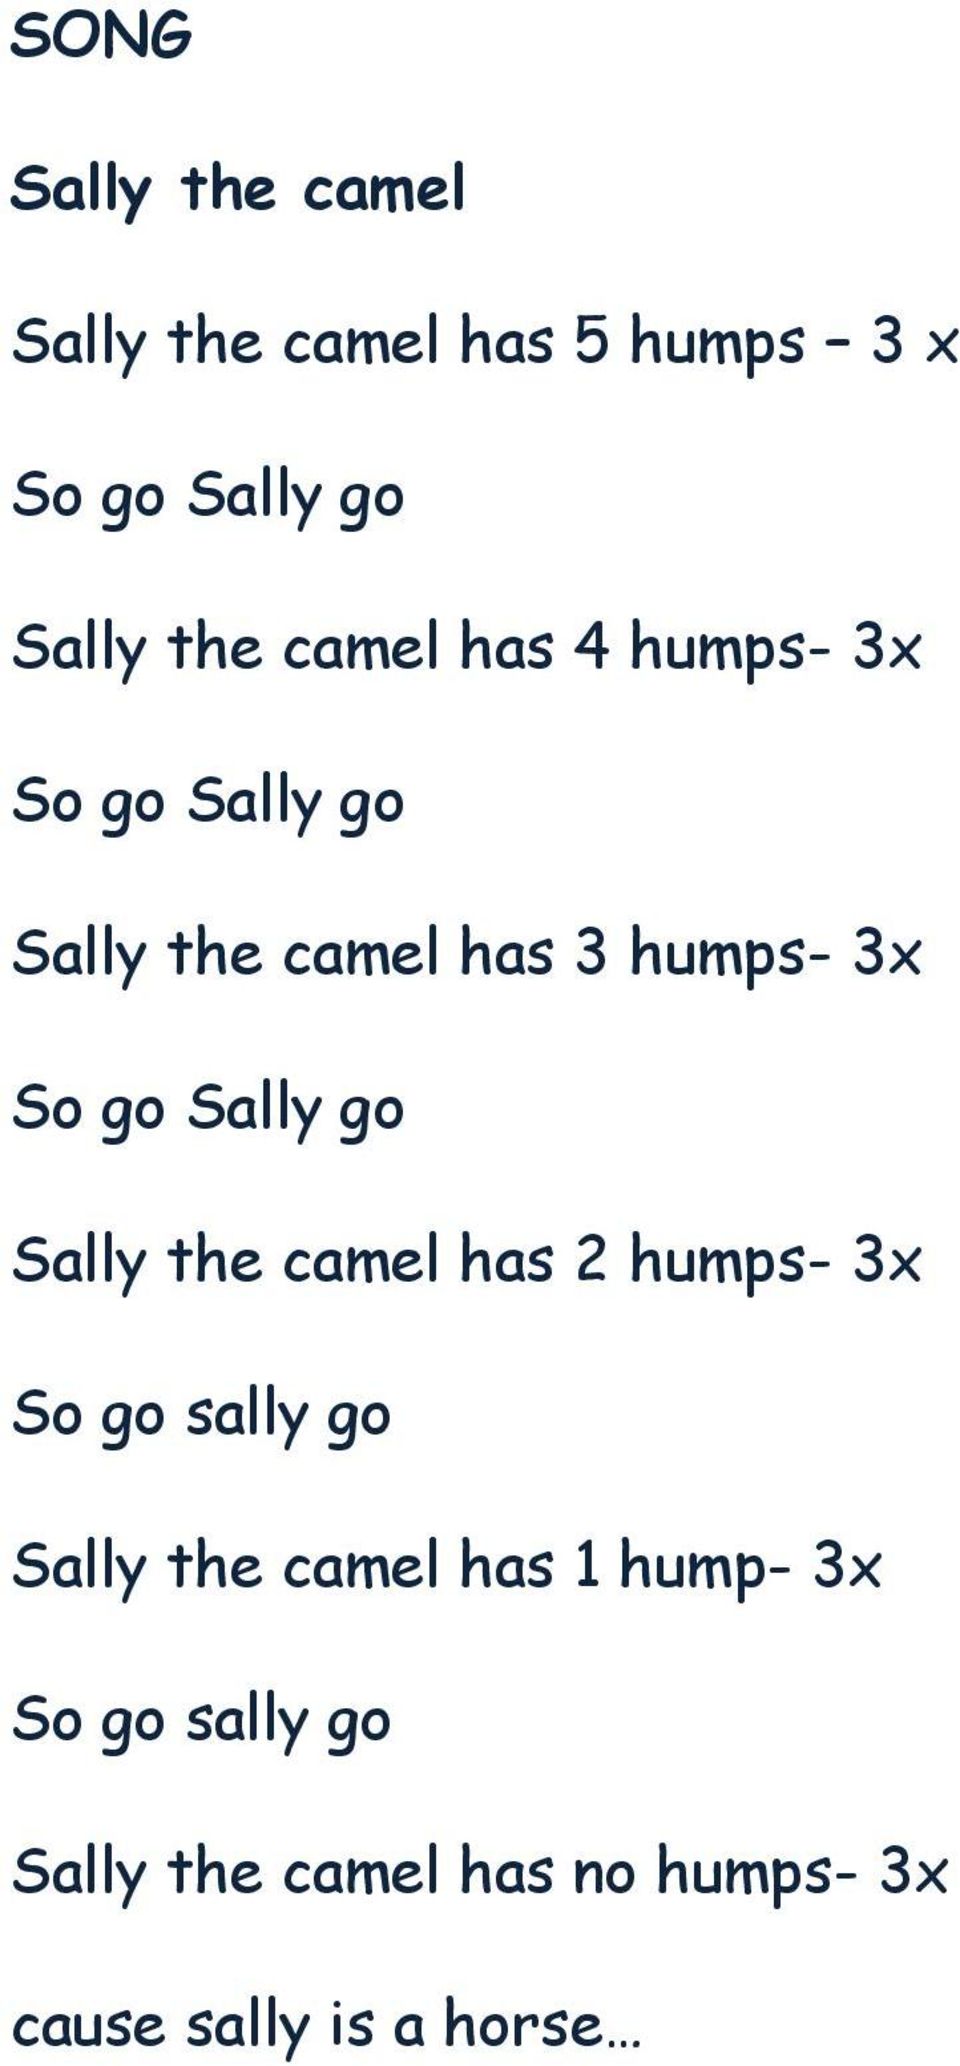 camel has 2 humps- 3x So go sally go Sally the camel has 1 hump-